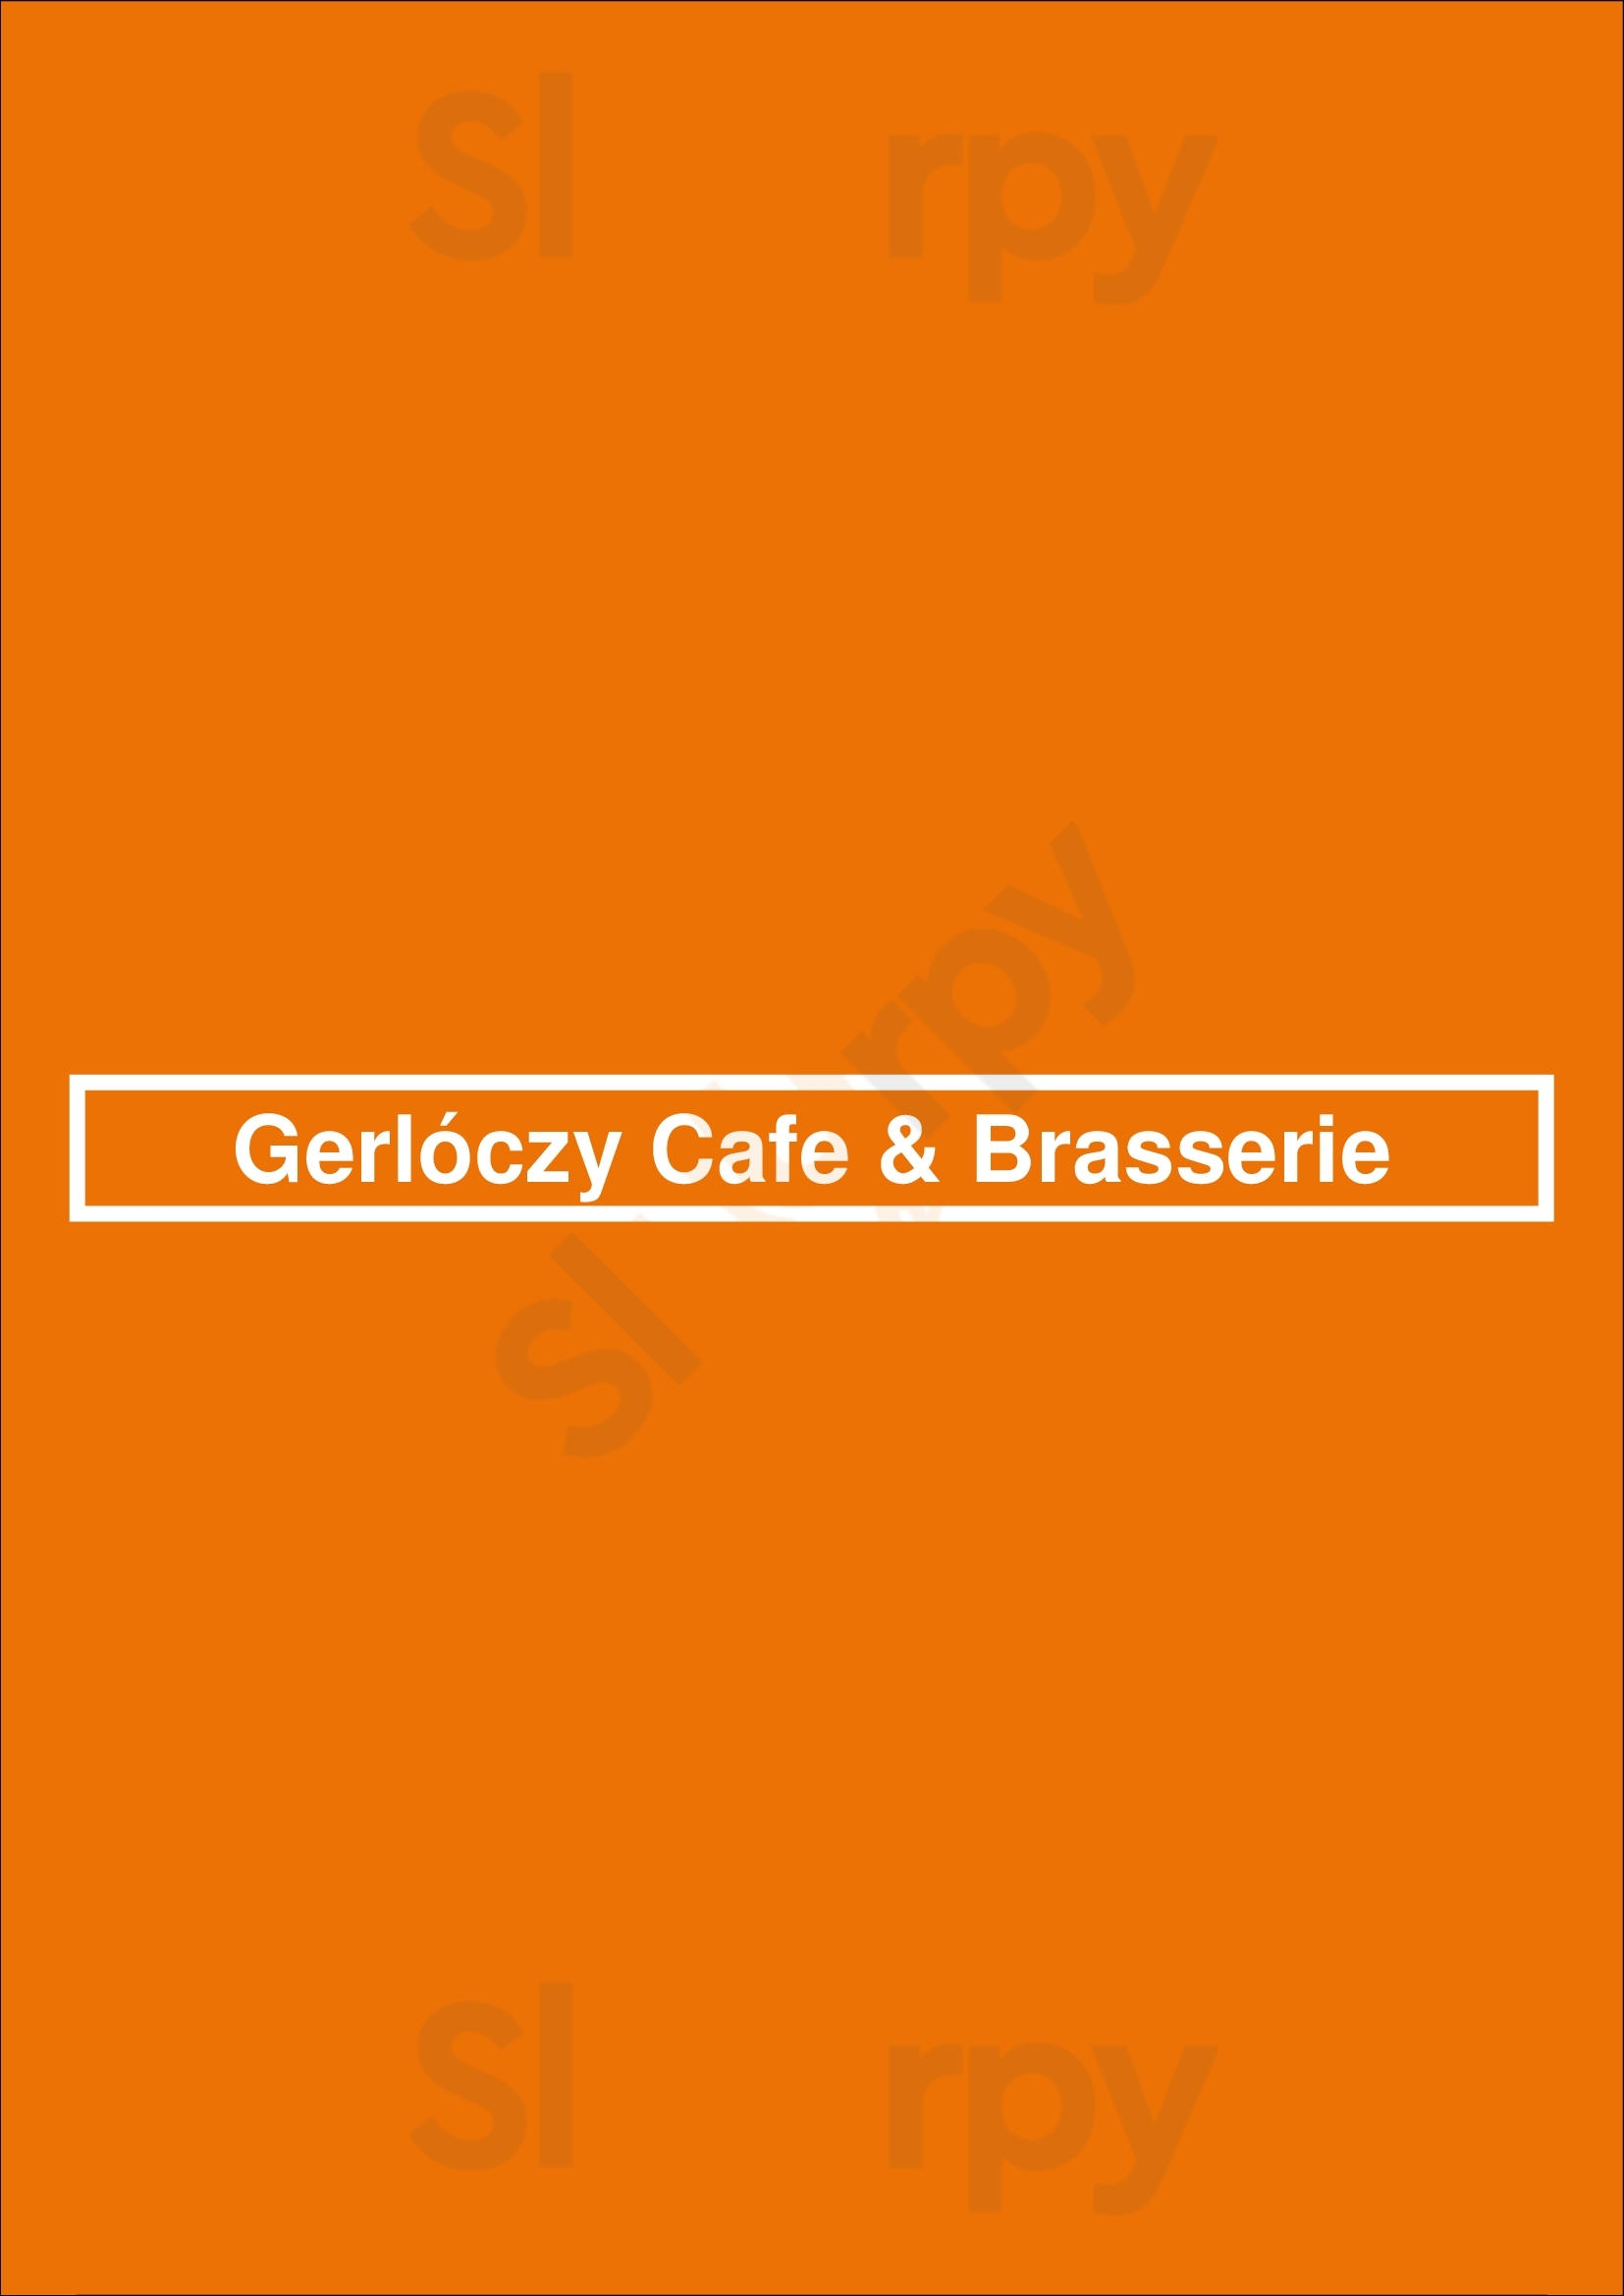 Gerlóczy Cafe & Brasserie Budapest Menu - 1